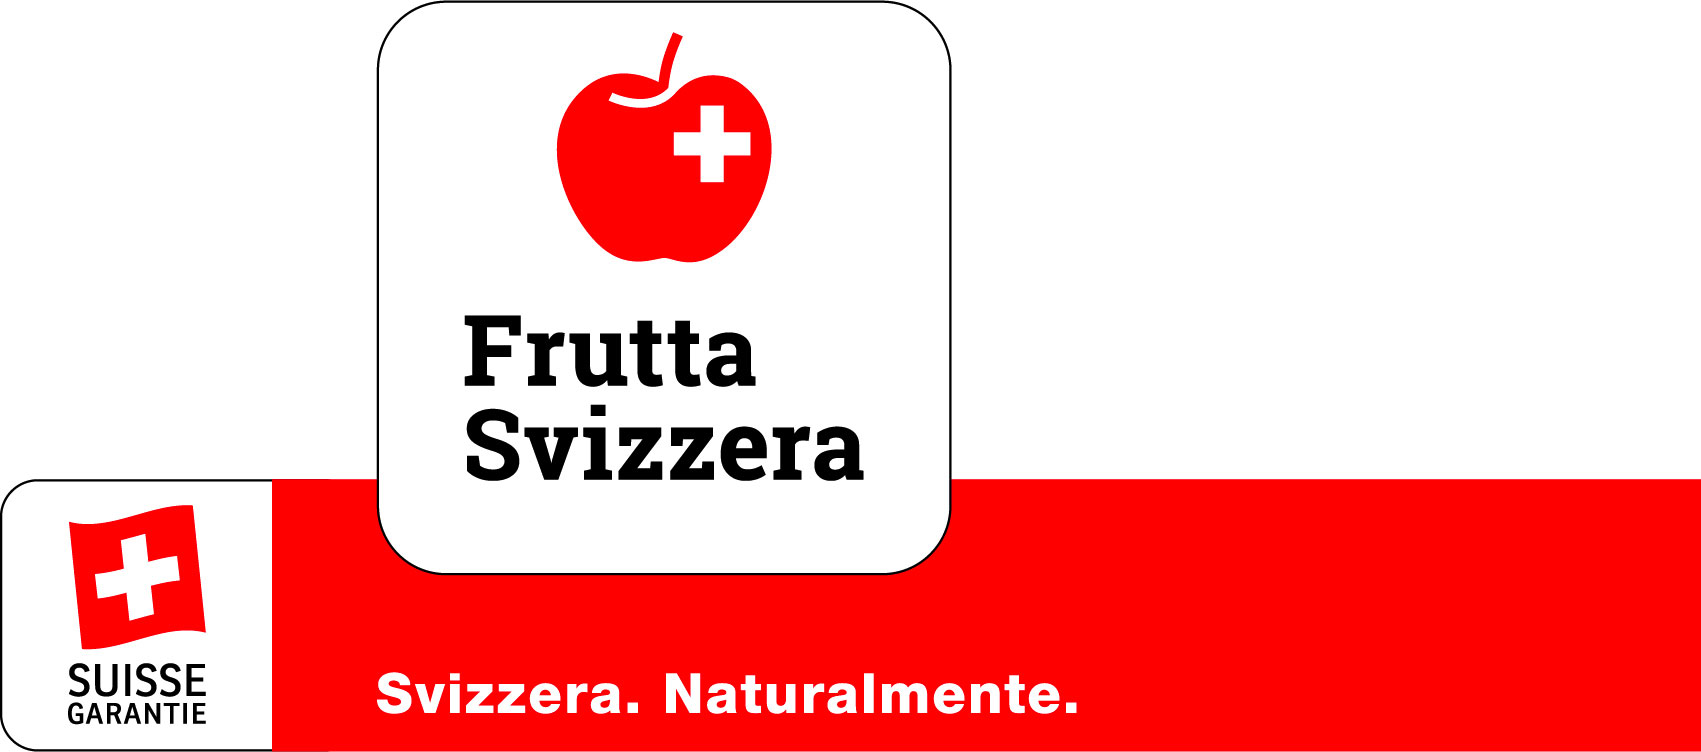 Associazione Frutta Svizzera